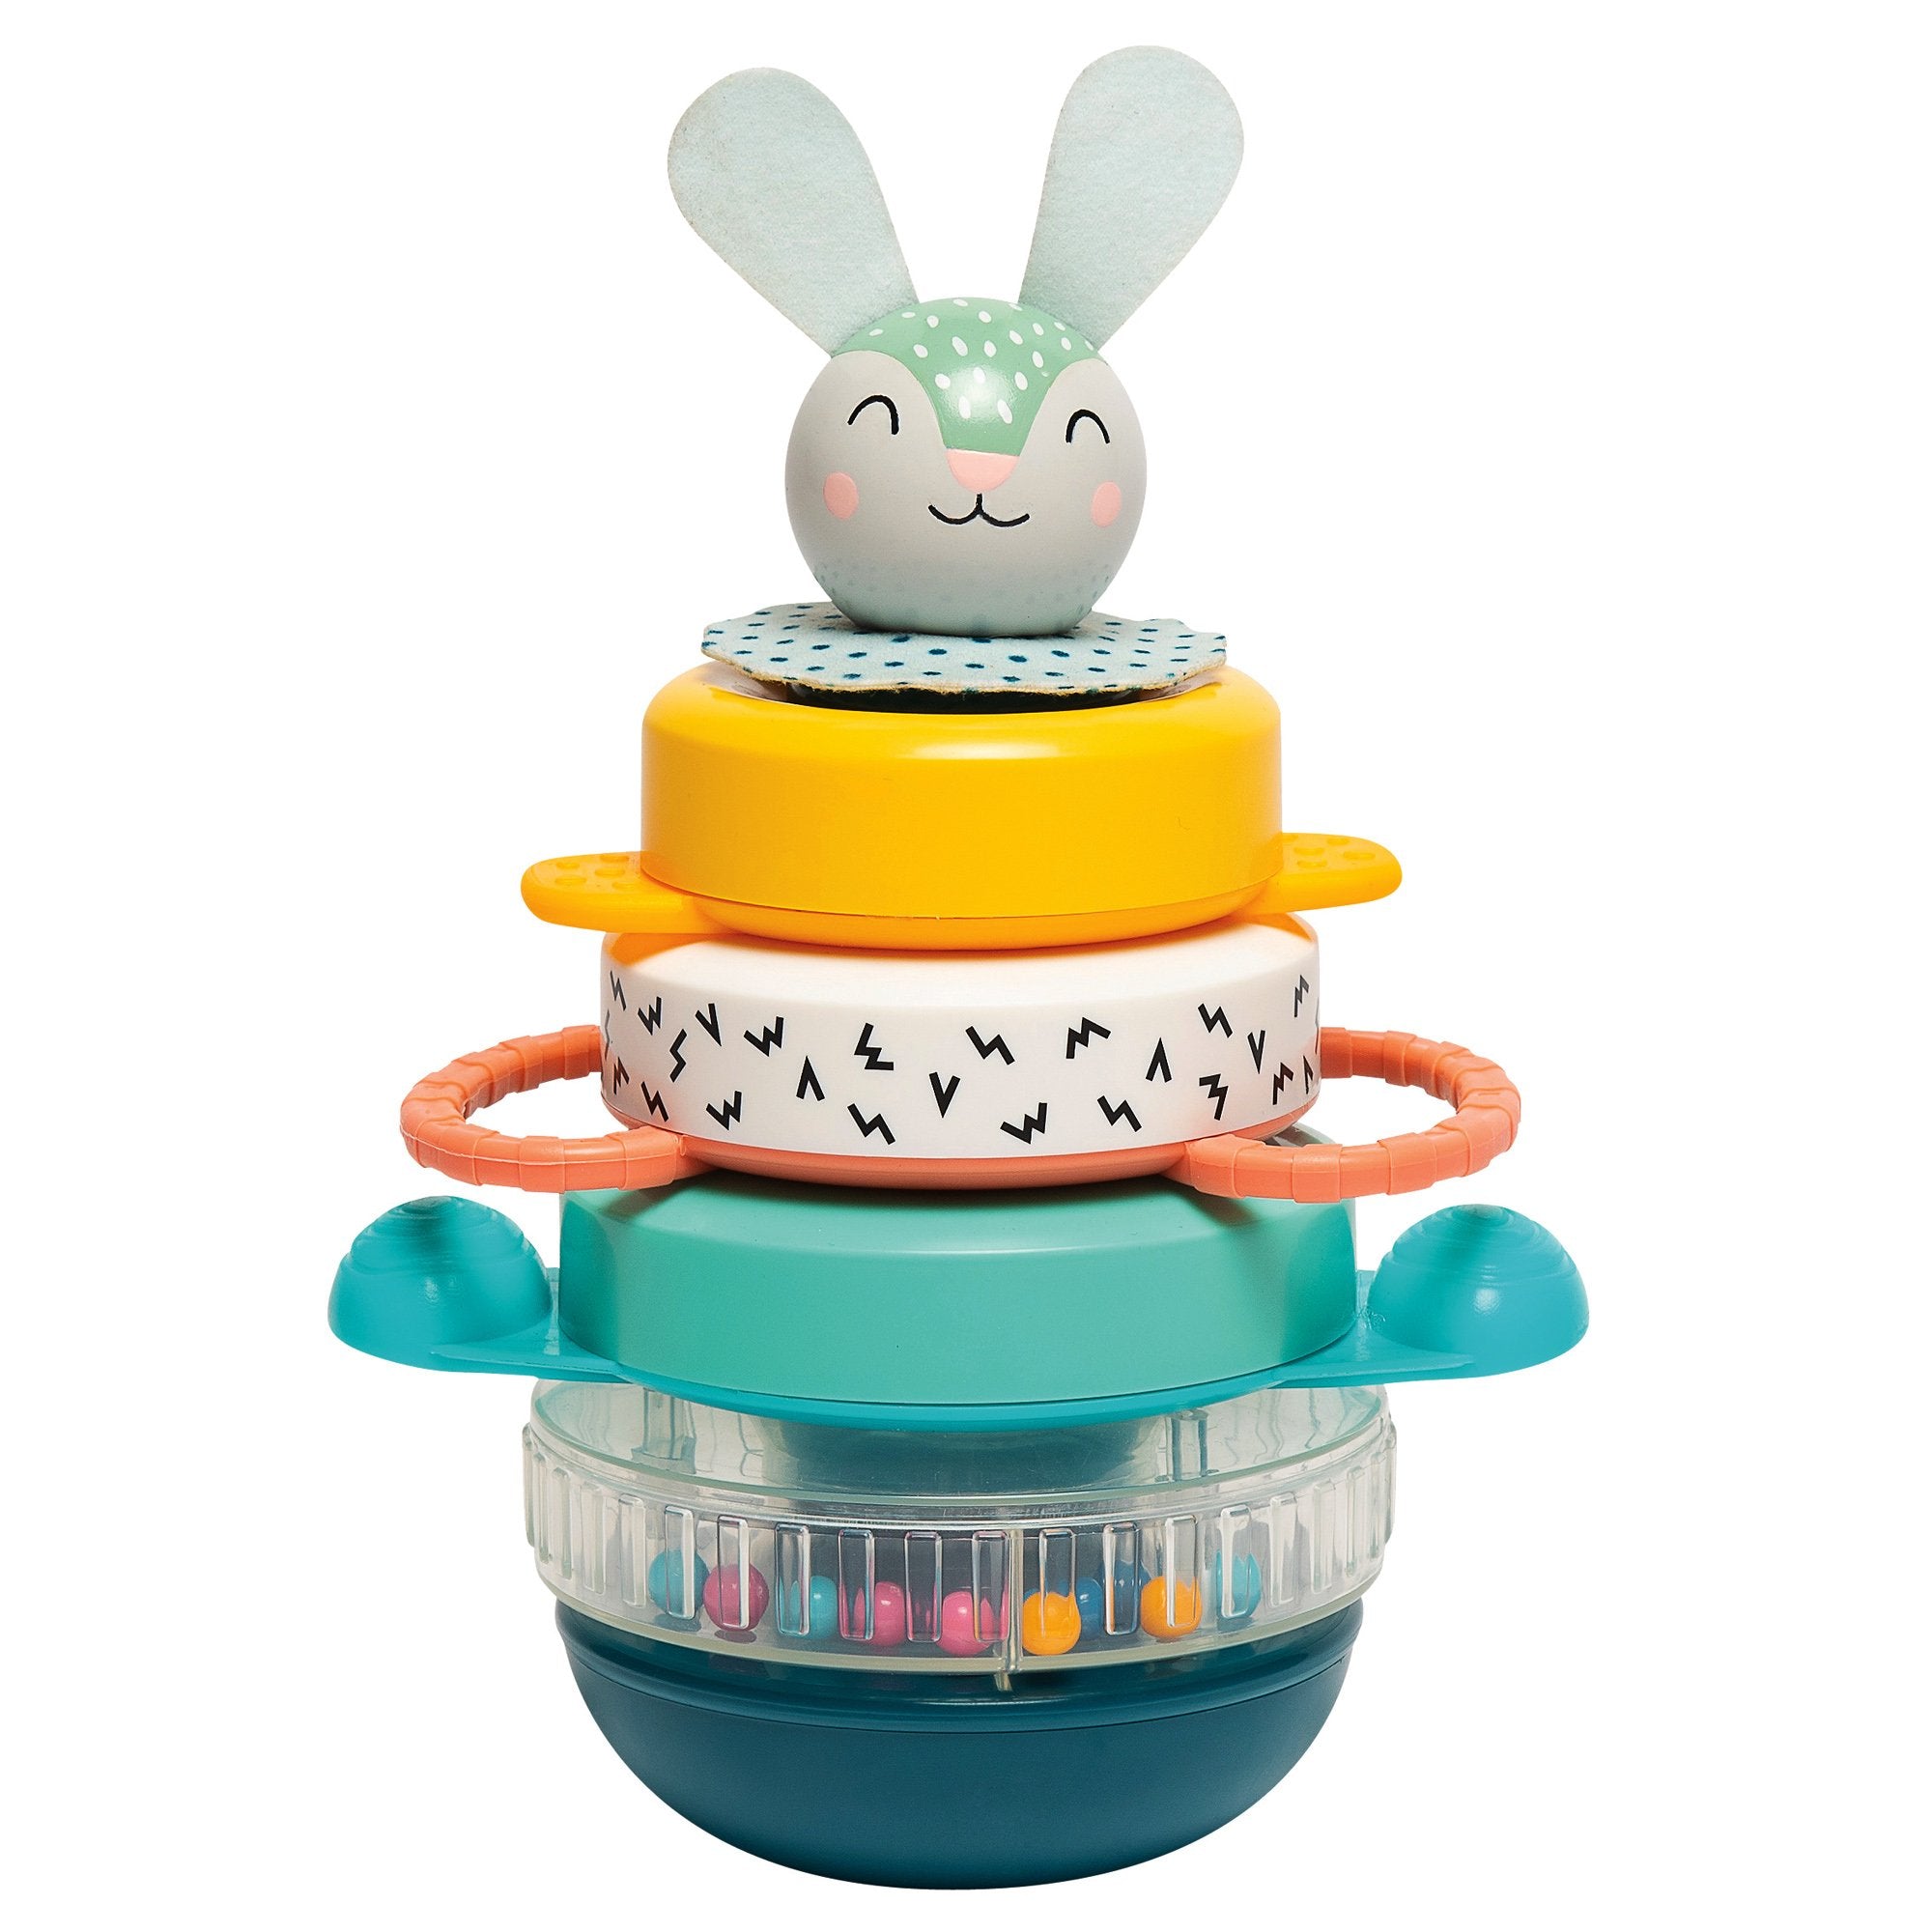 Taf Toys Hunny Bunny stacker